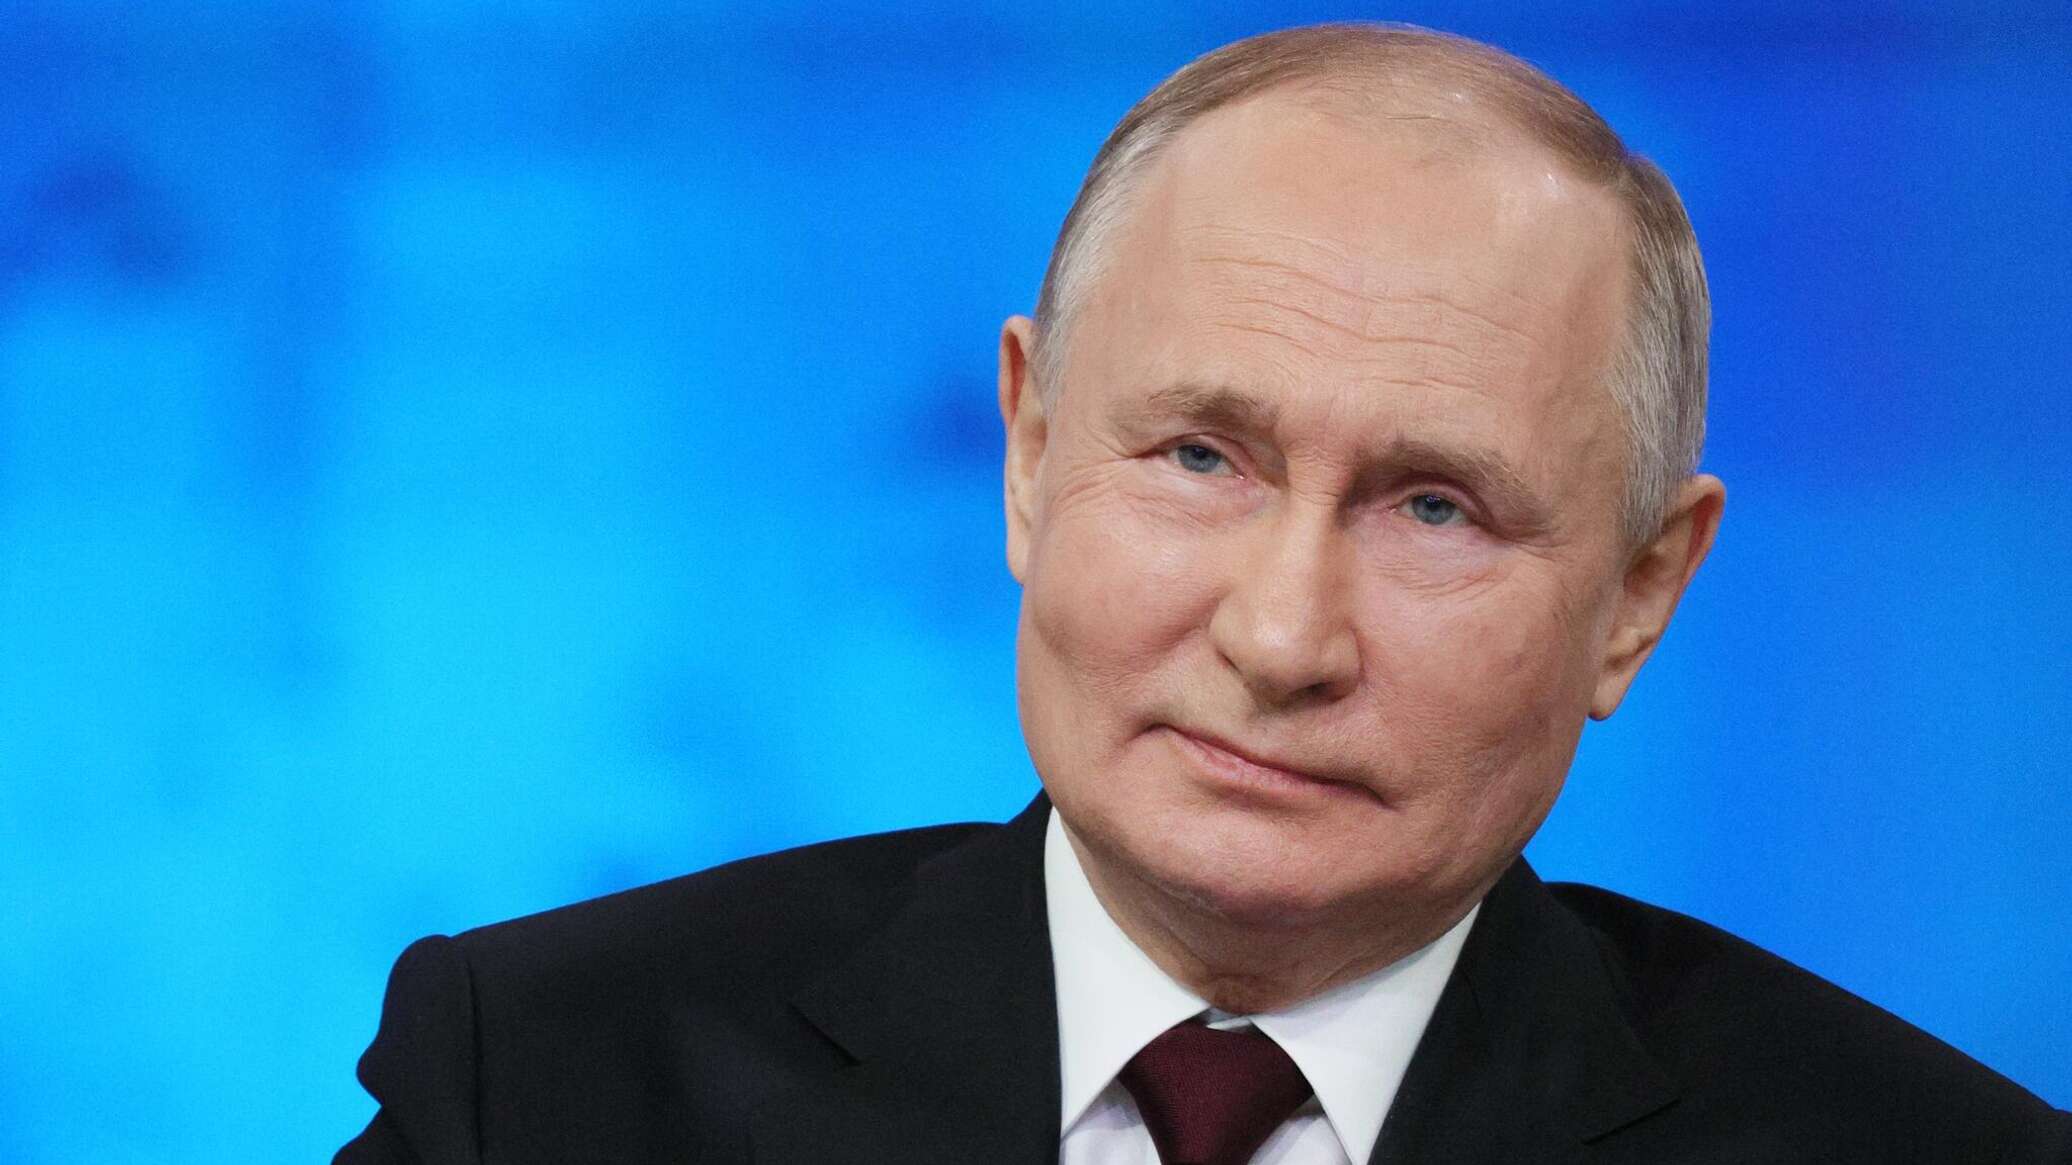 مؤتمر "روسيا الموحدة" يؤيد بالإجماع ترشيح بوتين لرئاسة البلاد... فيديو